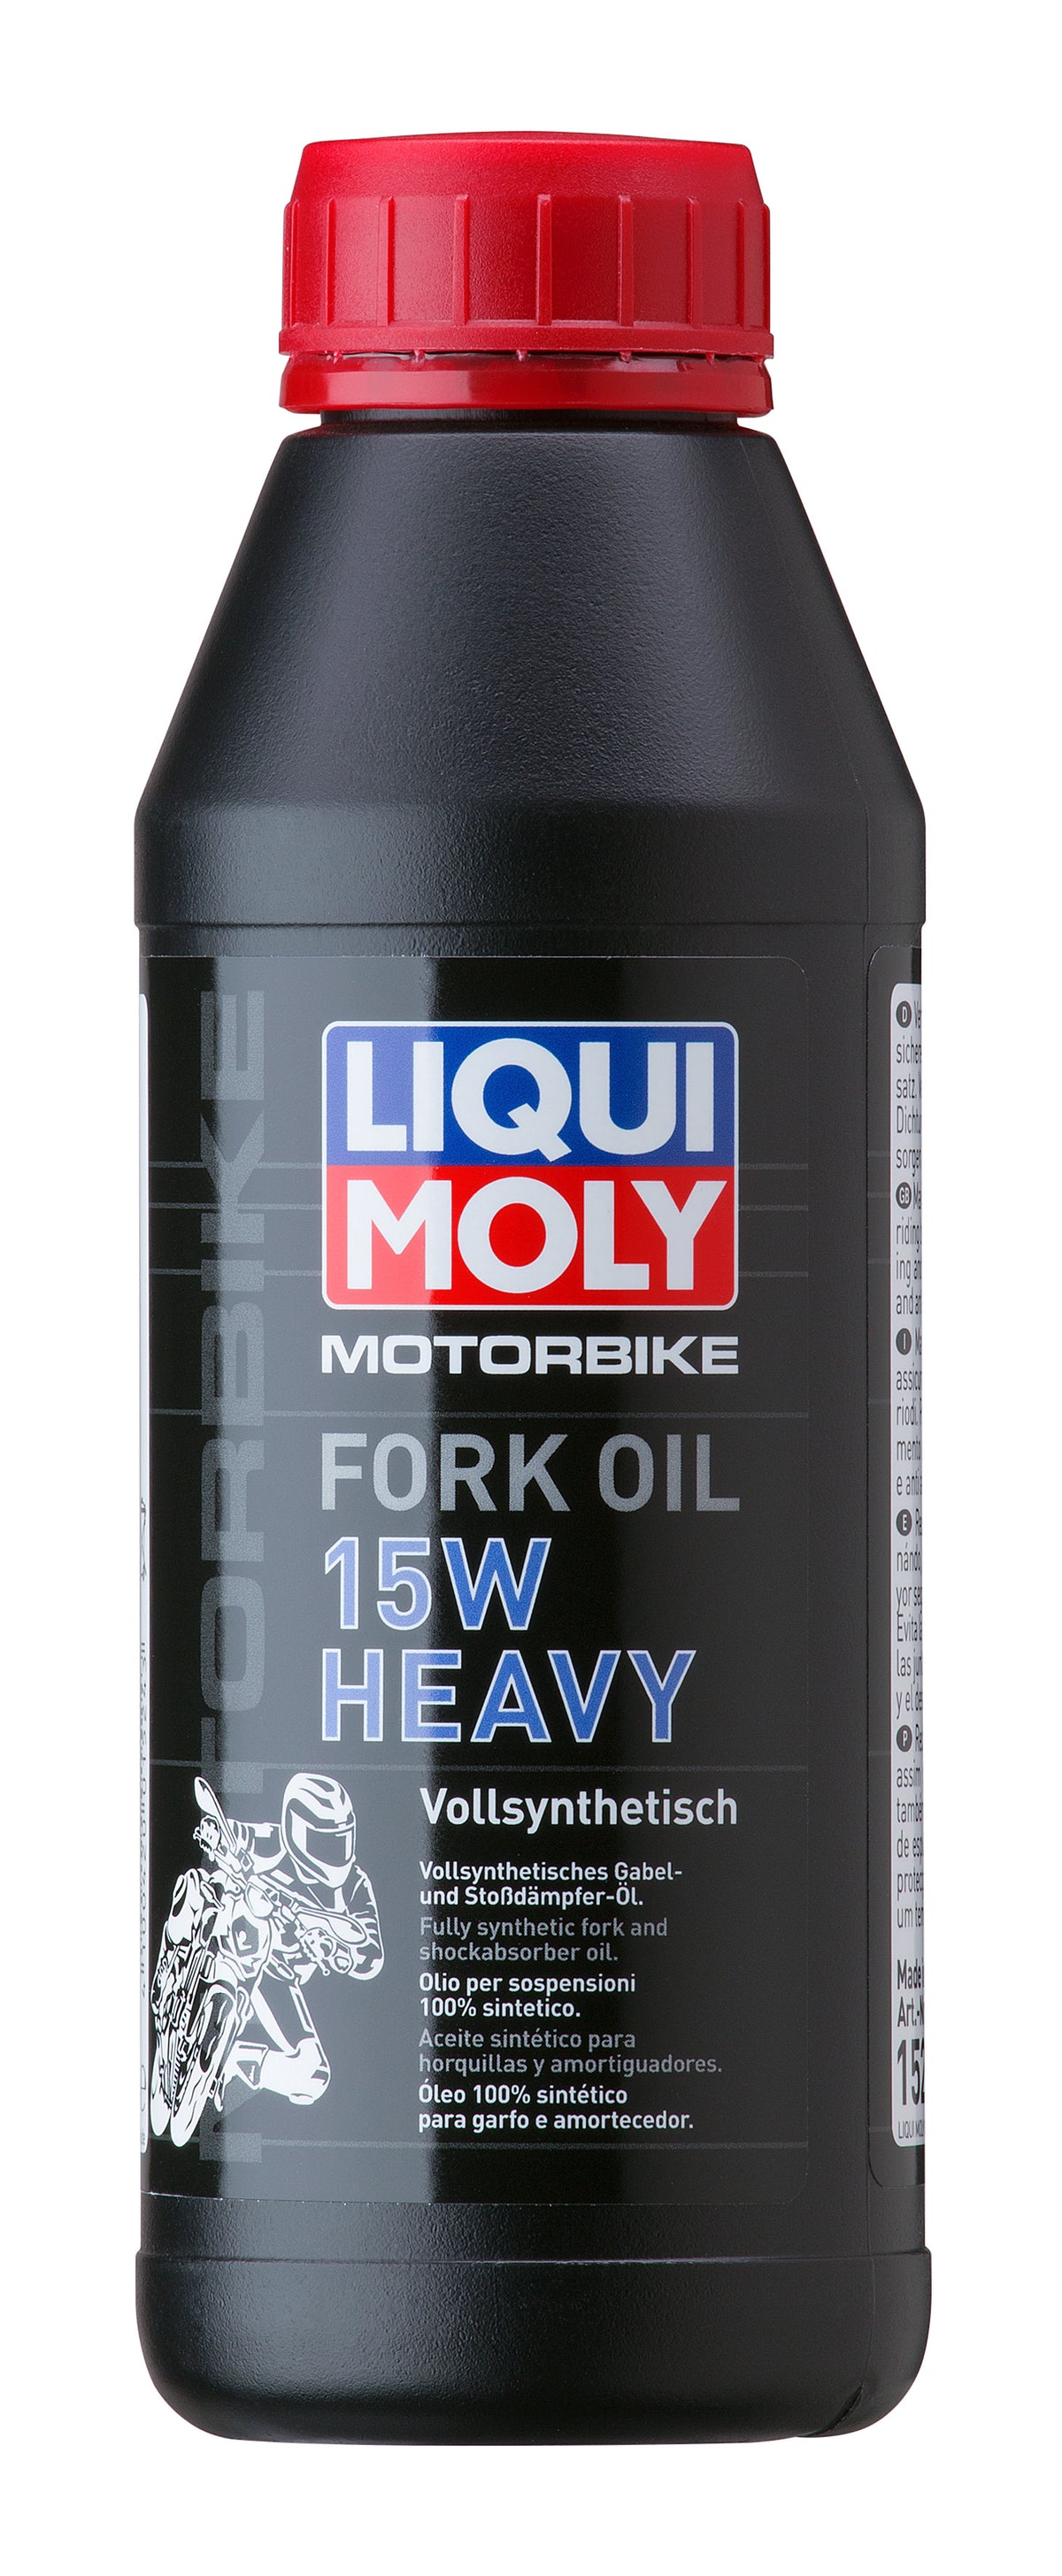 Voorvorkolie Liqui Moly 15W (500ml)